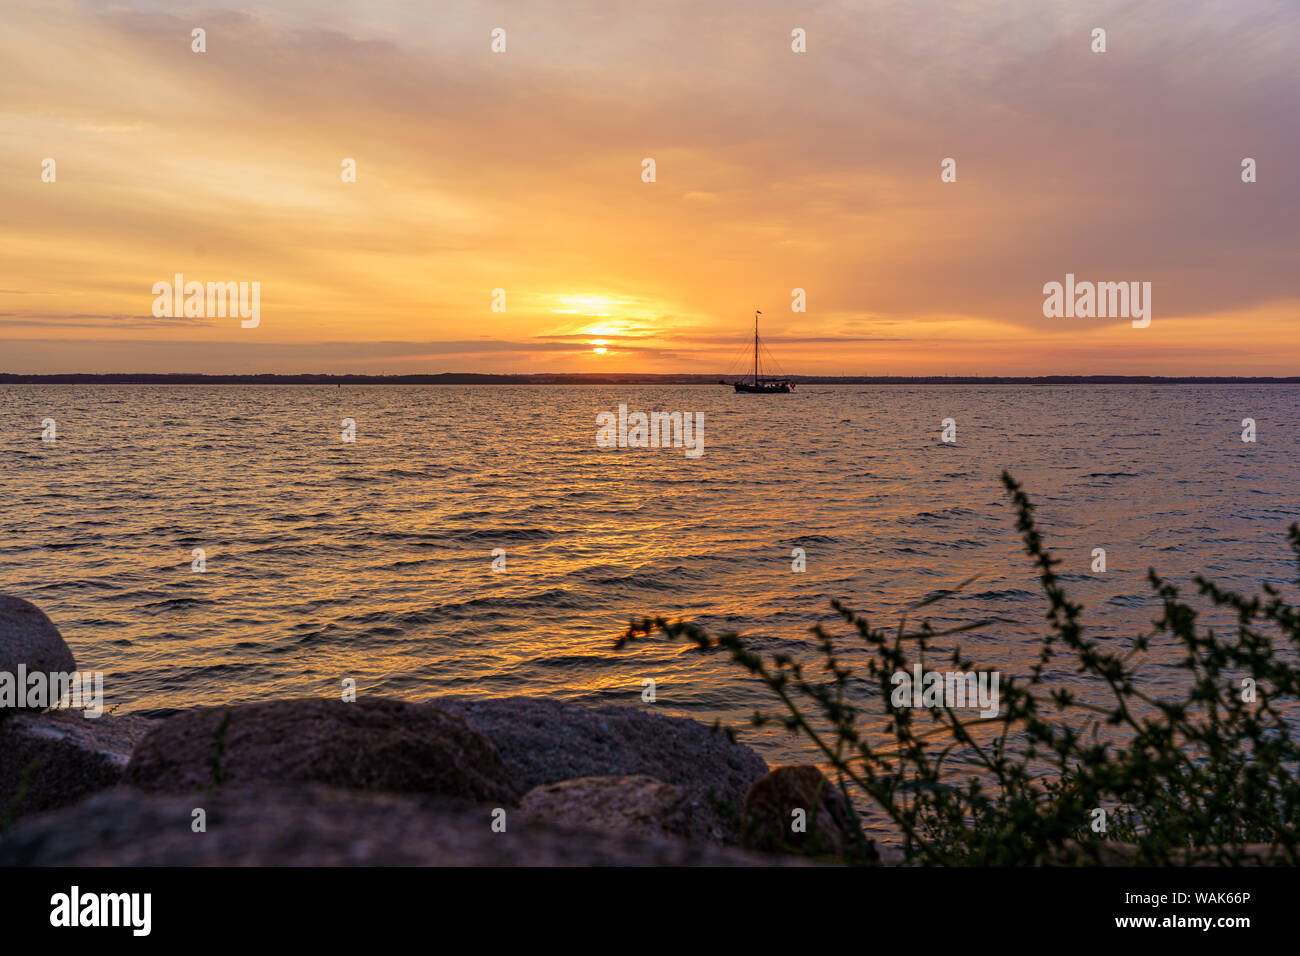 Coucher du soleil sur la mer Baltique avec bateau et certaines graminées au premier plan Banque D'Images